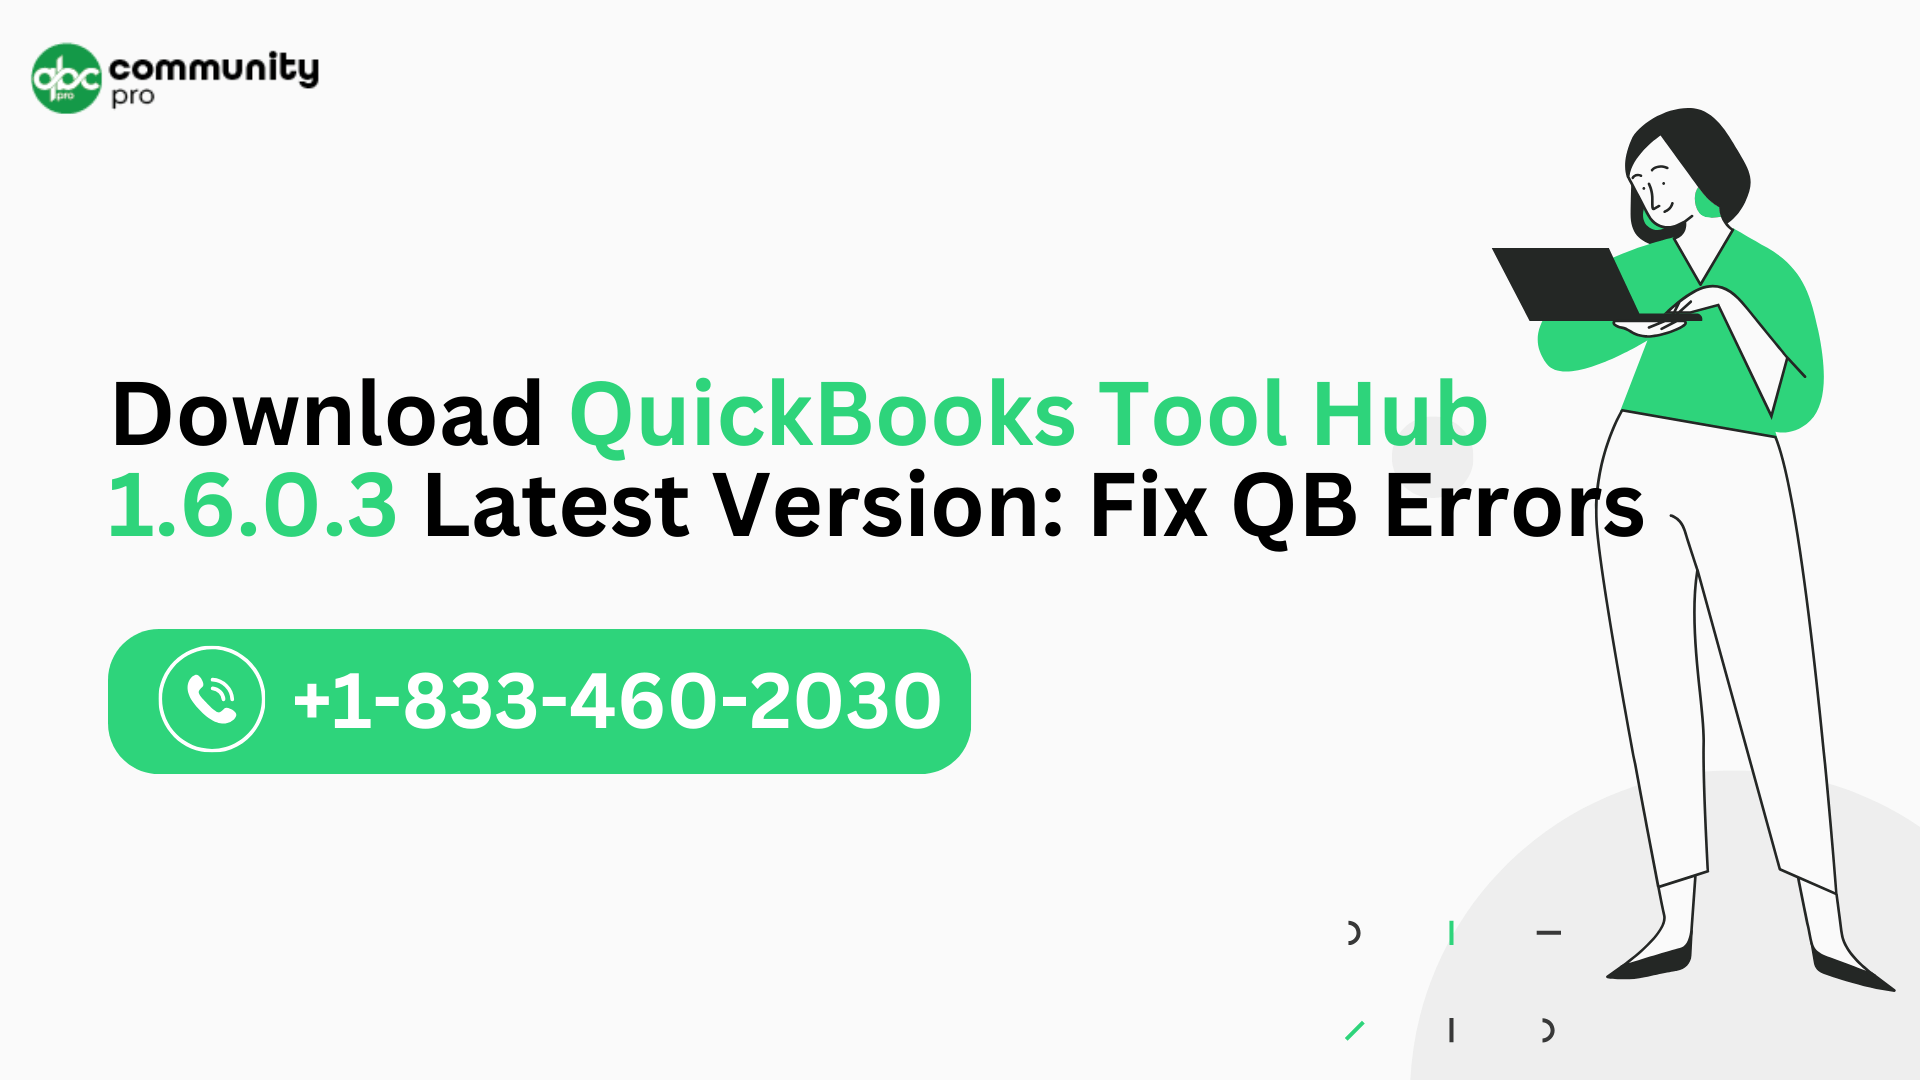 Download QuickBooks Tool Hub 1.6.0.3 Latest Version: Fix QB Errors